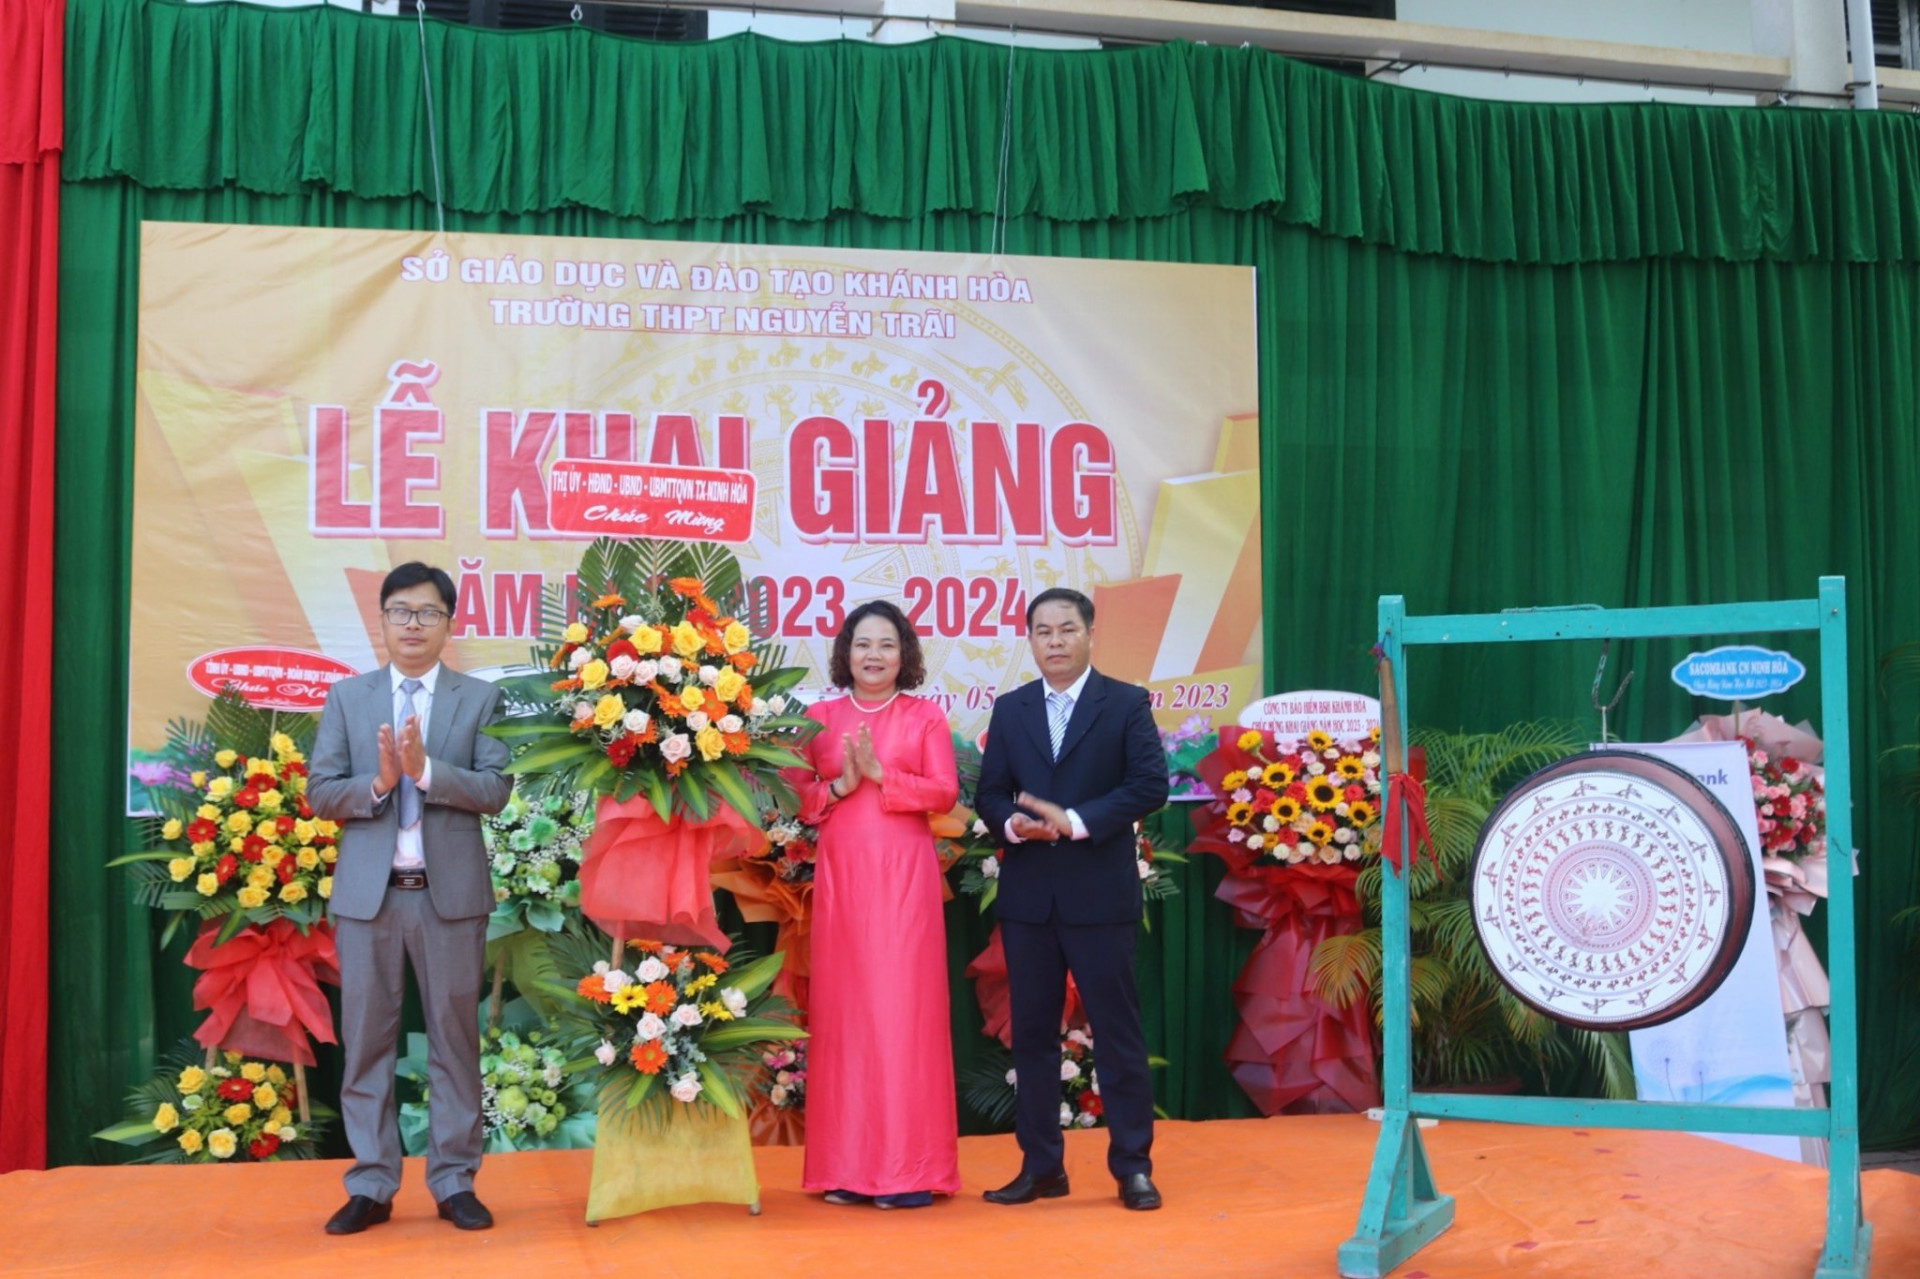 Lãnh đạo thị xã Ninh Hòa tặng hoa cho Trường THPT Nguyễn Trãi nhân dịp khai giảng.